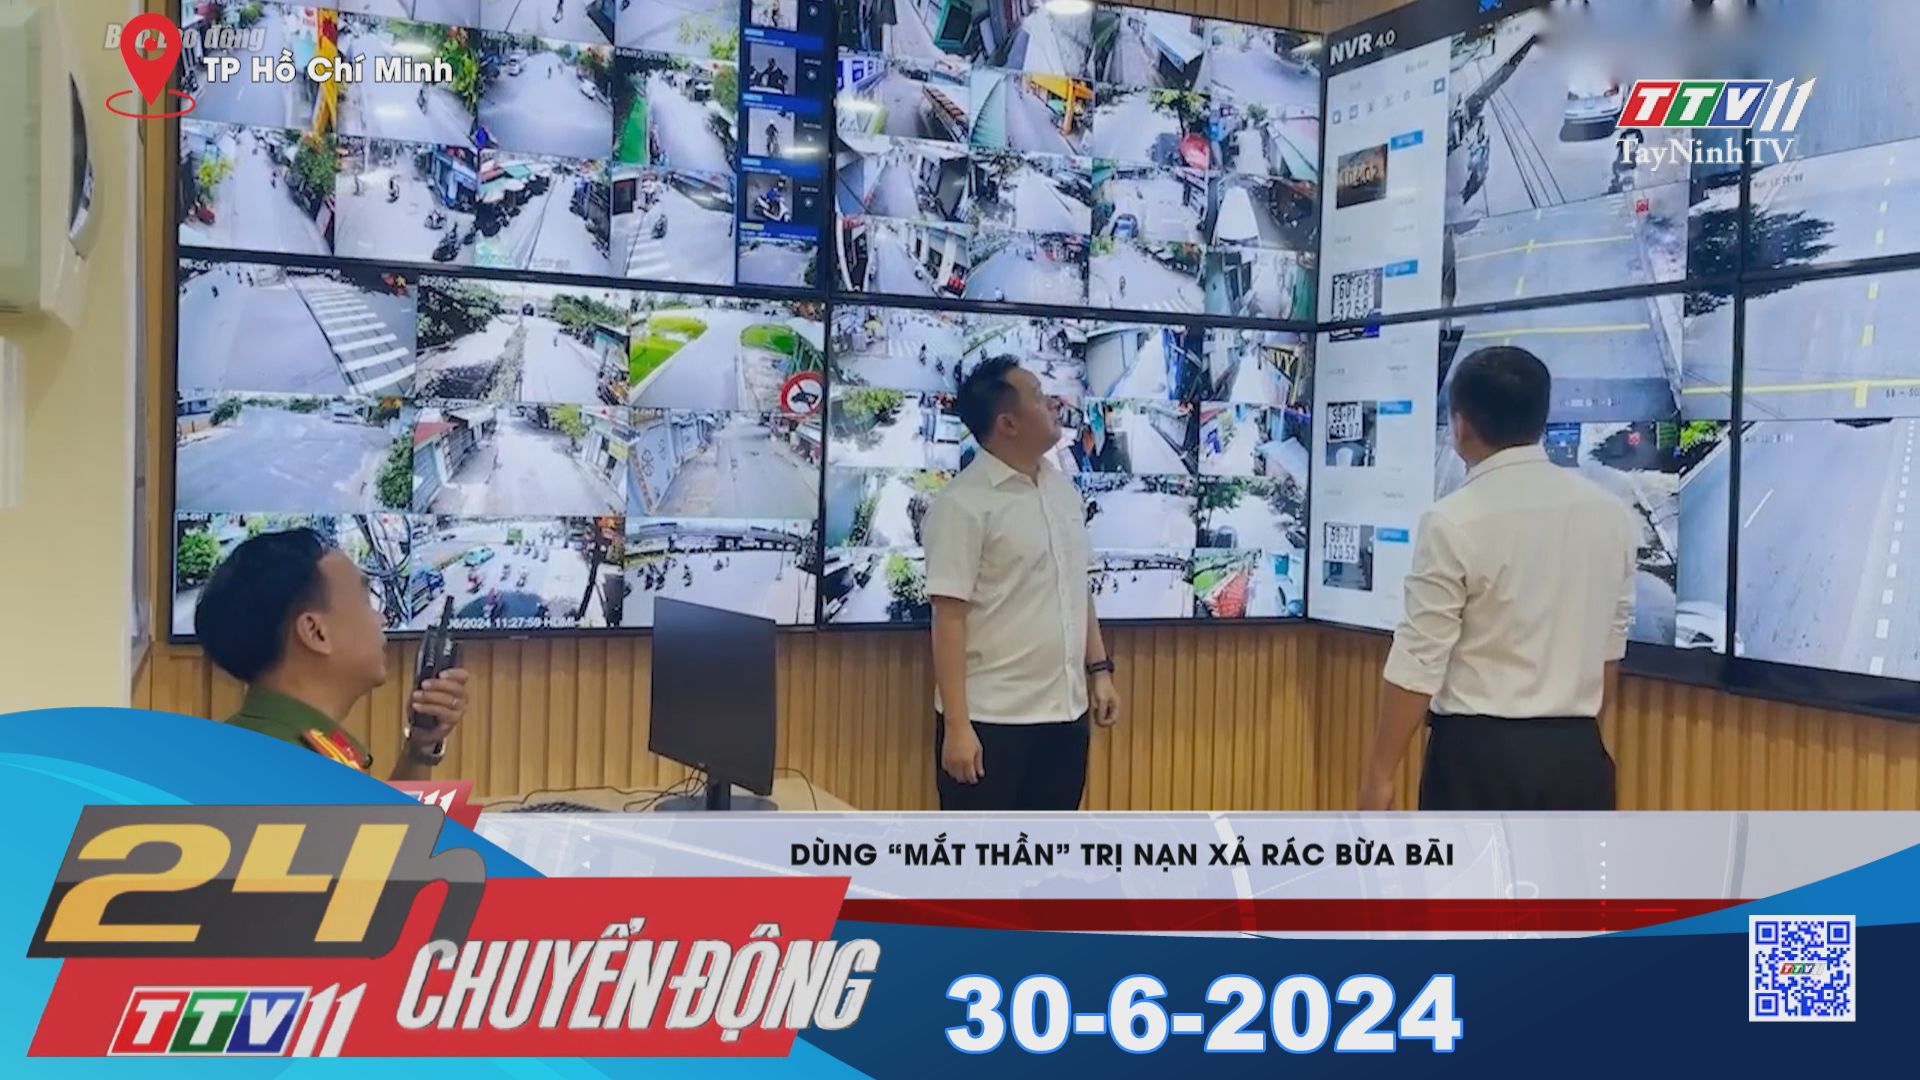 24h Chuyển động 30-6-2024 | Tin tức hôm nay | TayNinhTV